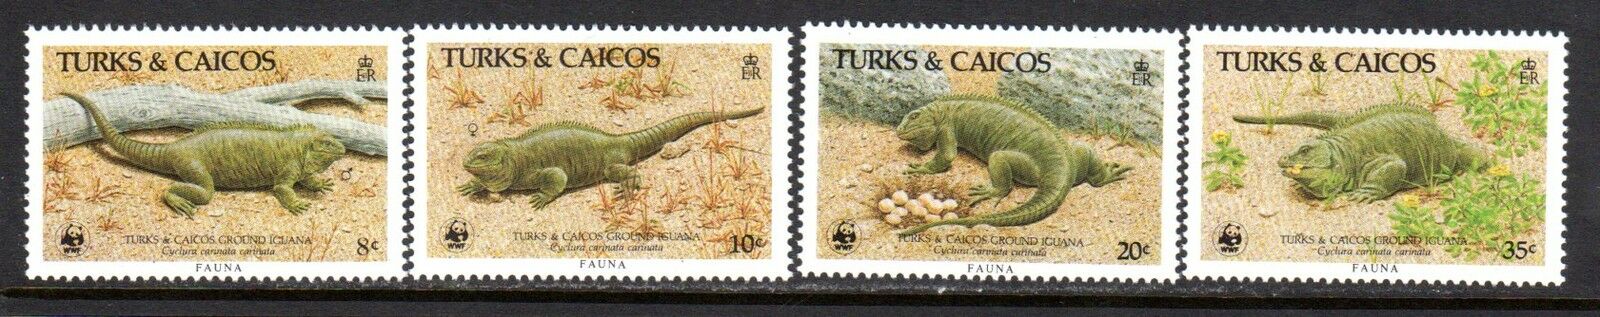 1986 Turks & Caicos 710-713 | 777-780 | 888-891 Mnh Set Of 4 Wwf Ground Iguanas